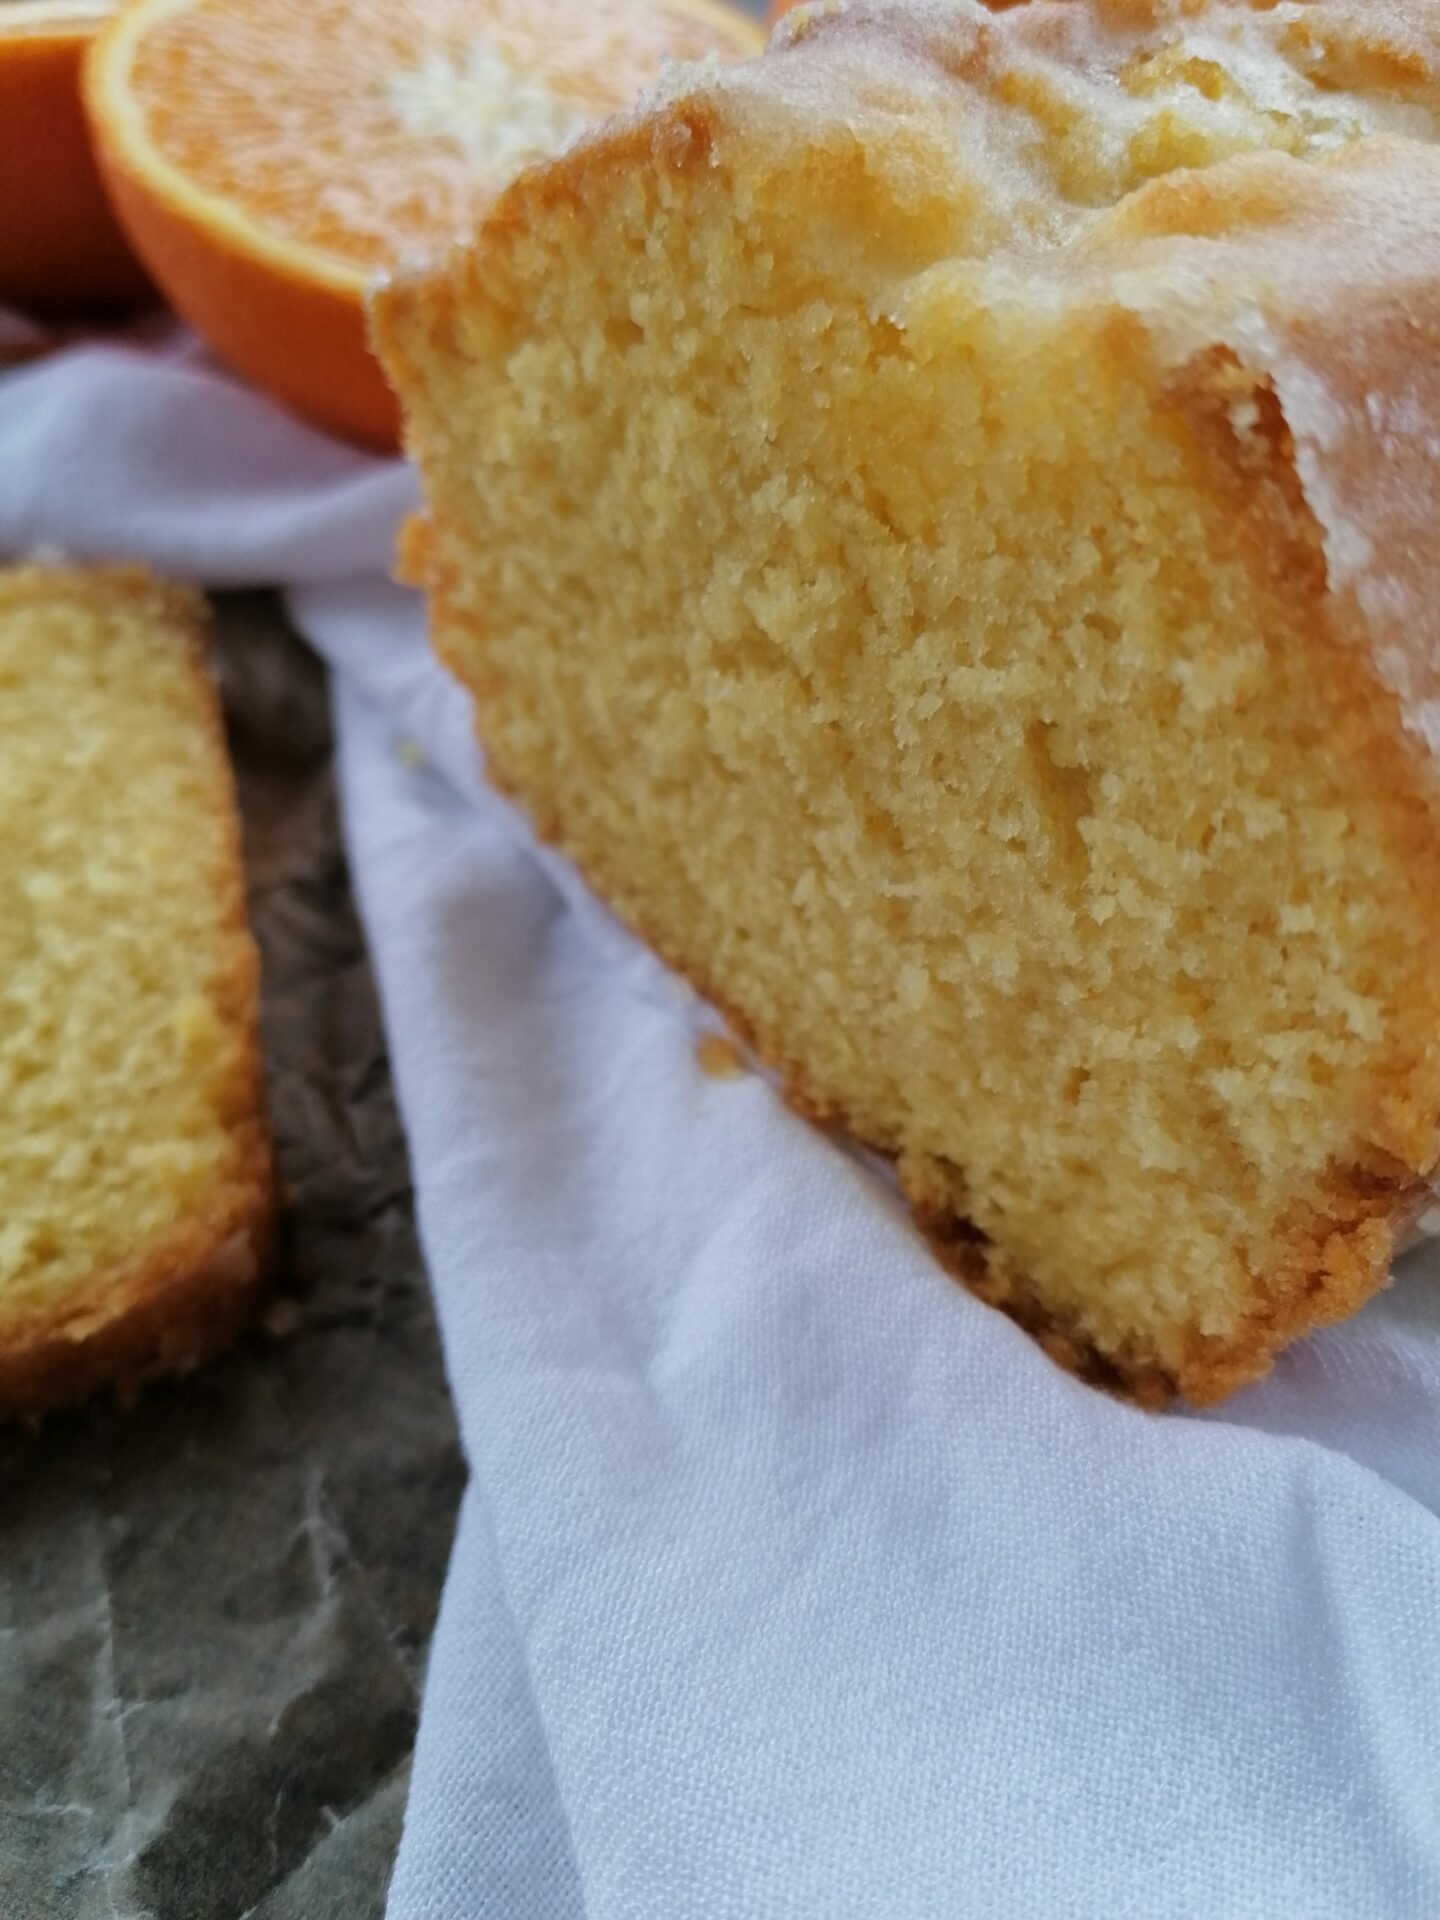 Orangenkuchen aufgeschnitten auf einem weißen Tuch. Im Hintergrund eine halbe Orange. Links im Bild liegt ein abgeschnittenes Kuchenstück.